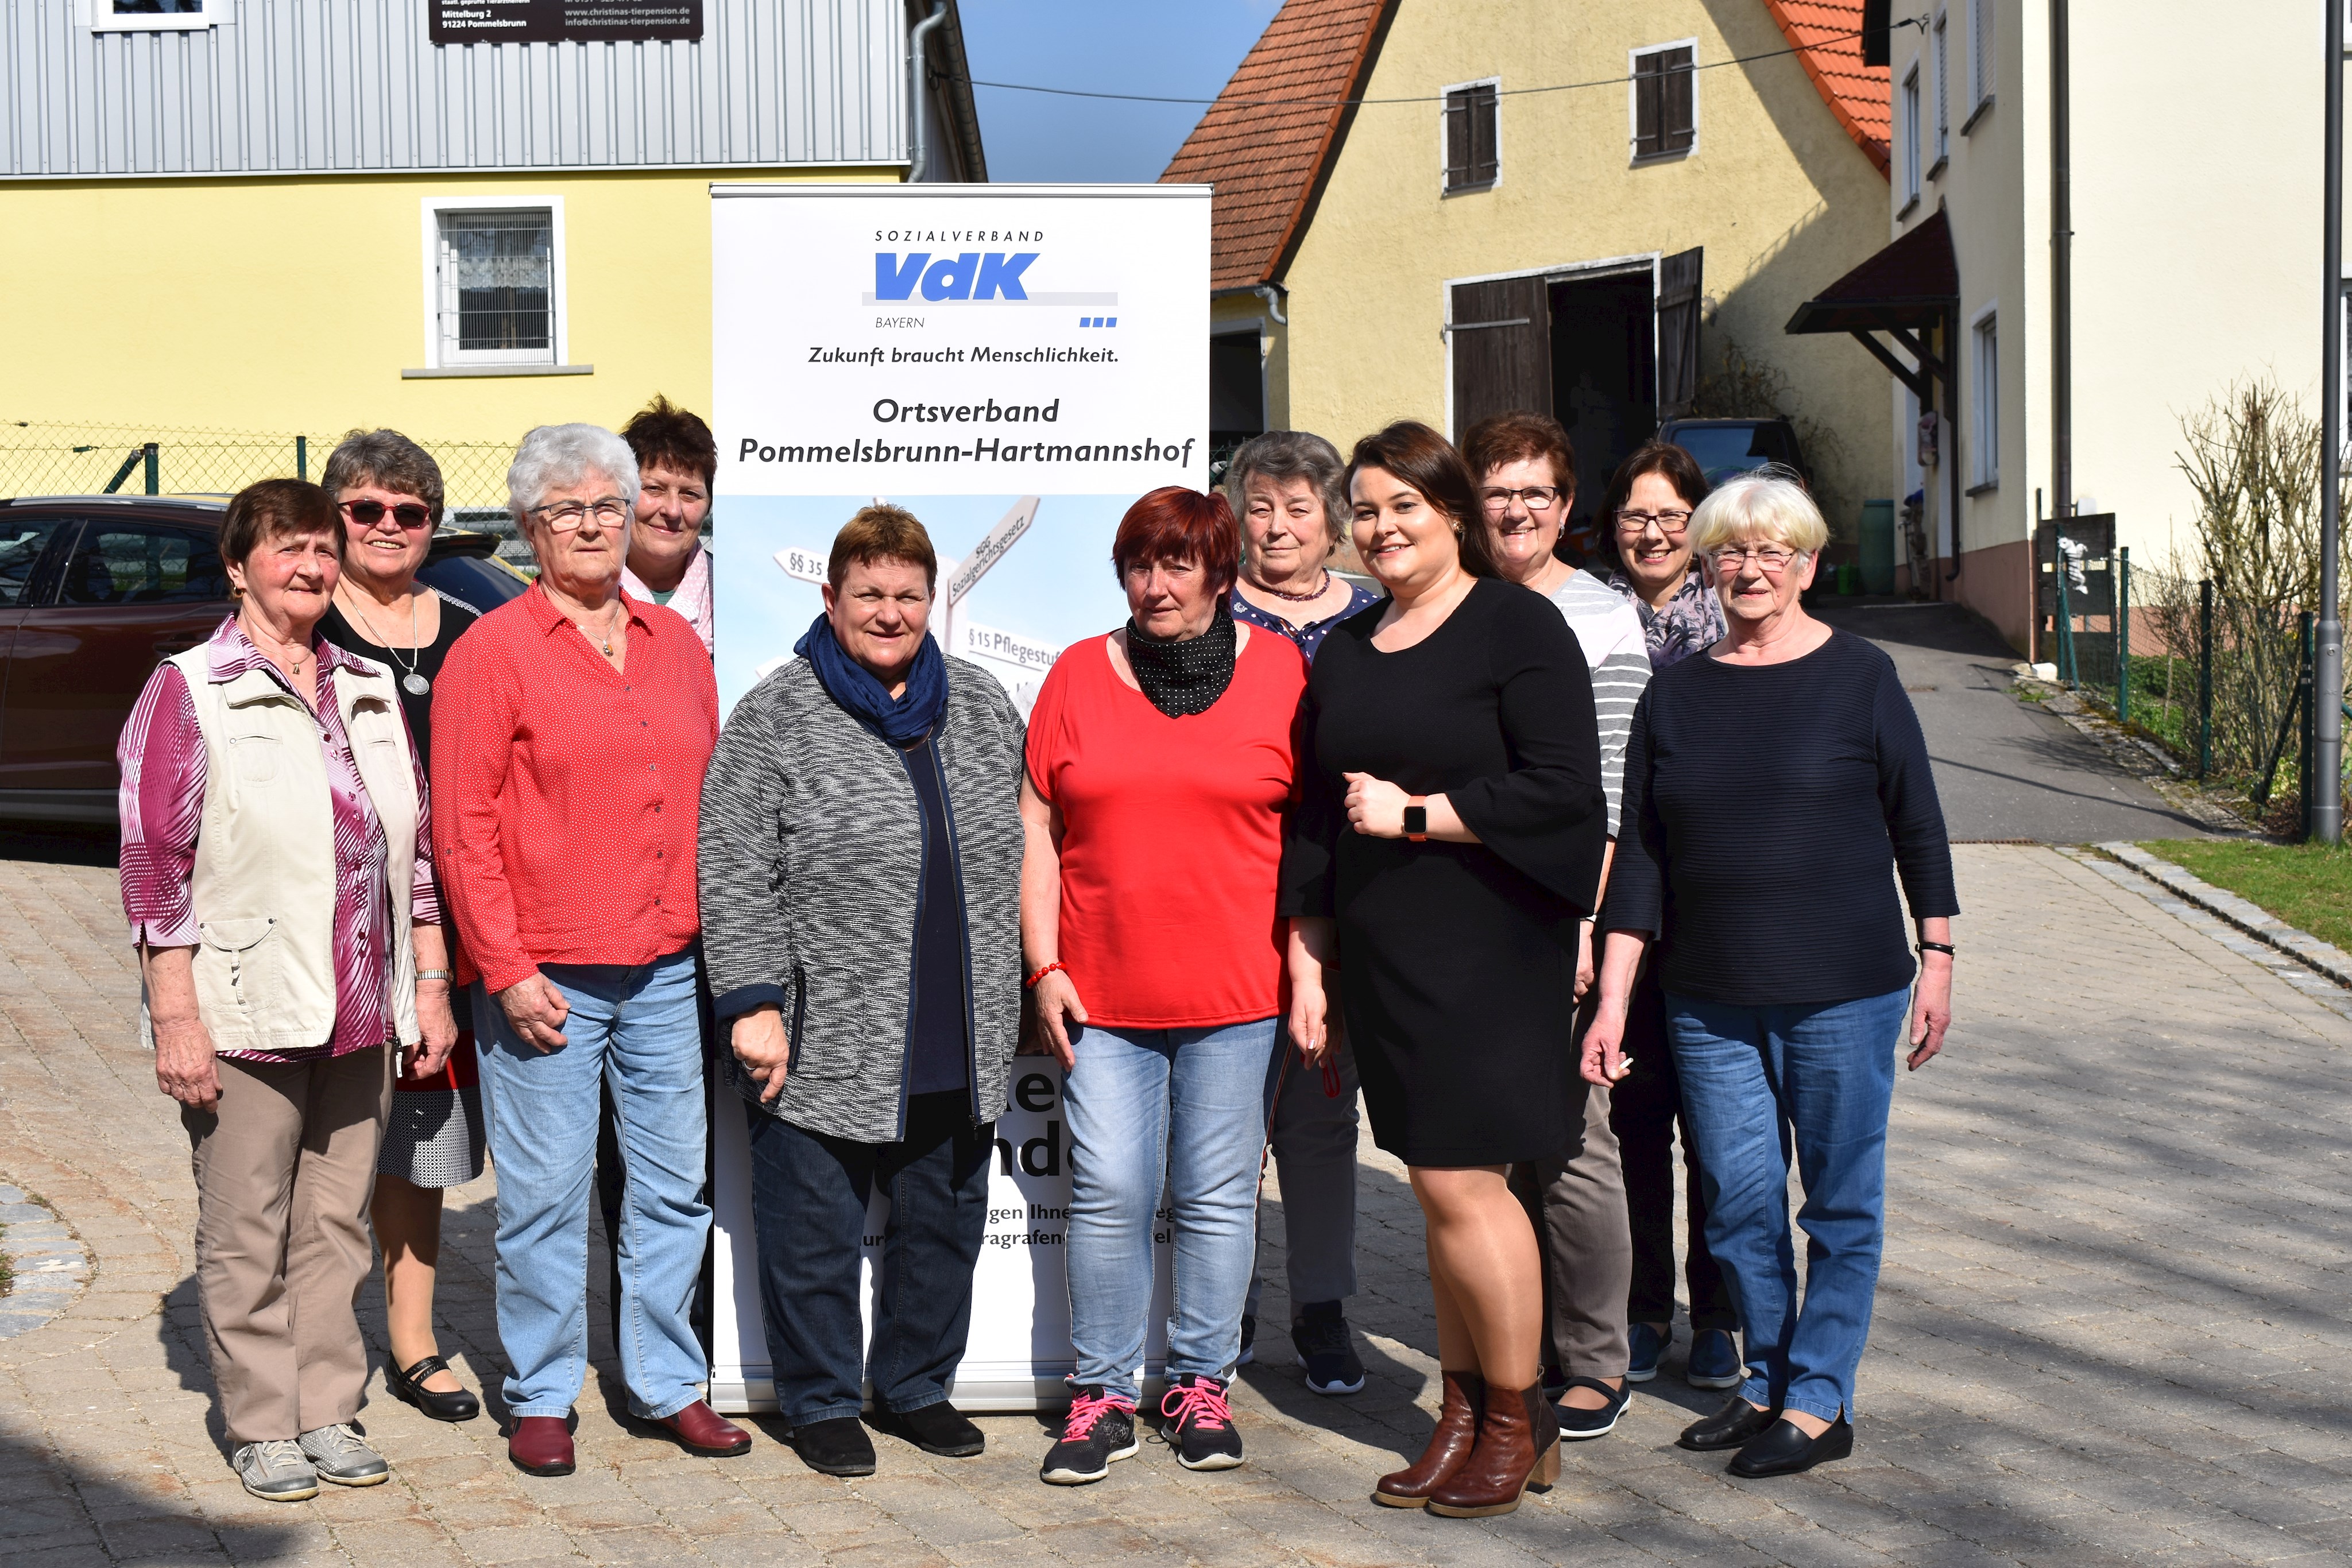 Jahreshauptversammlung des VdK-Ortsverbands Pommelsbrunn-Hartmannshof im Gasthaus „Zur Linde“ in Mittelburg am 6.4.2019